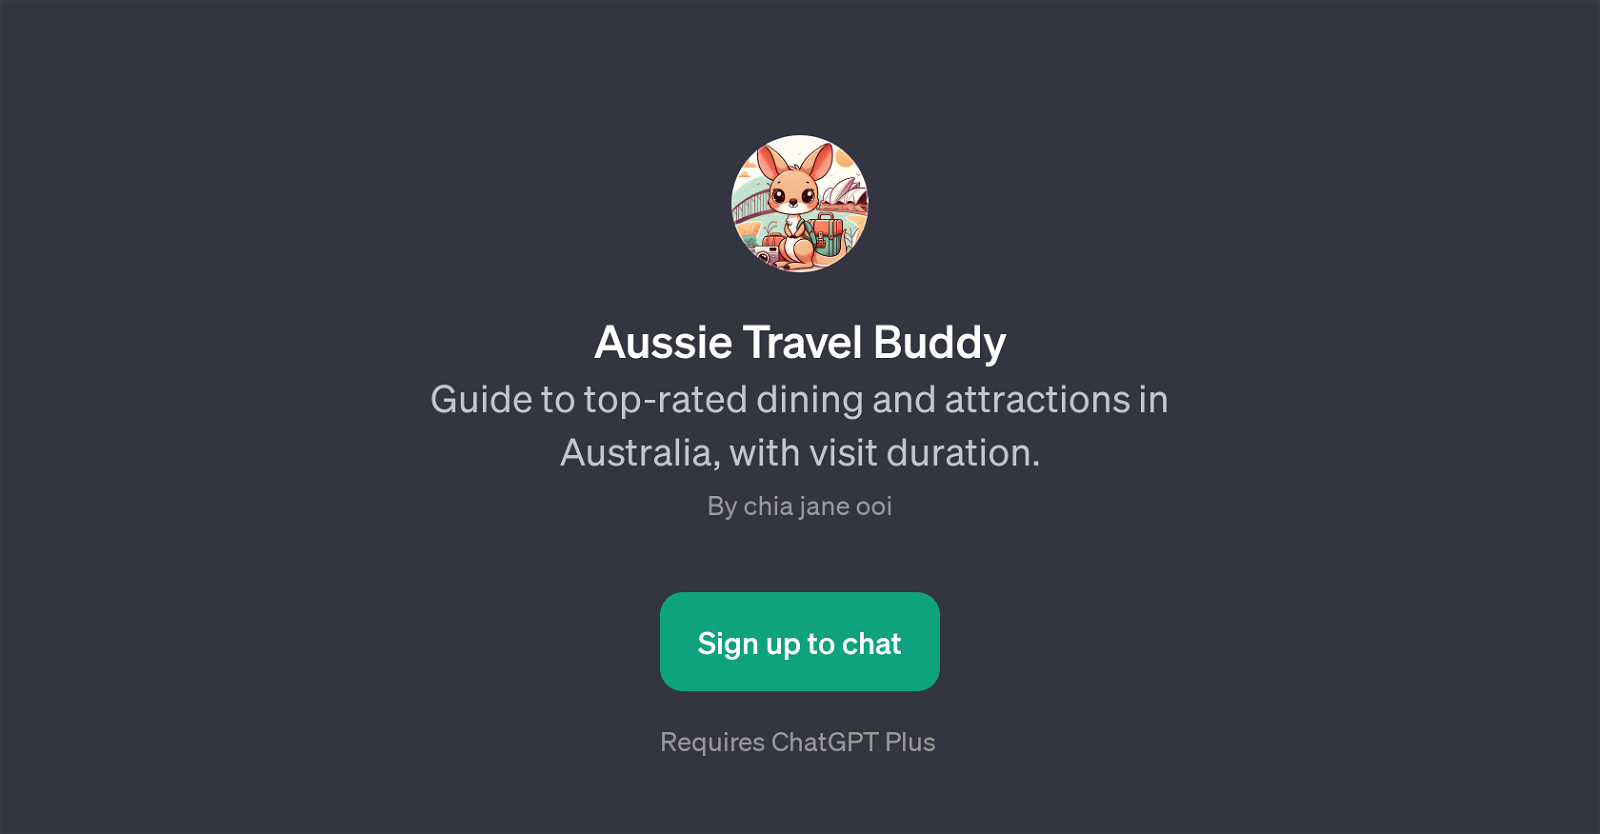 Aussie Travel Buddy website